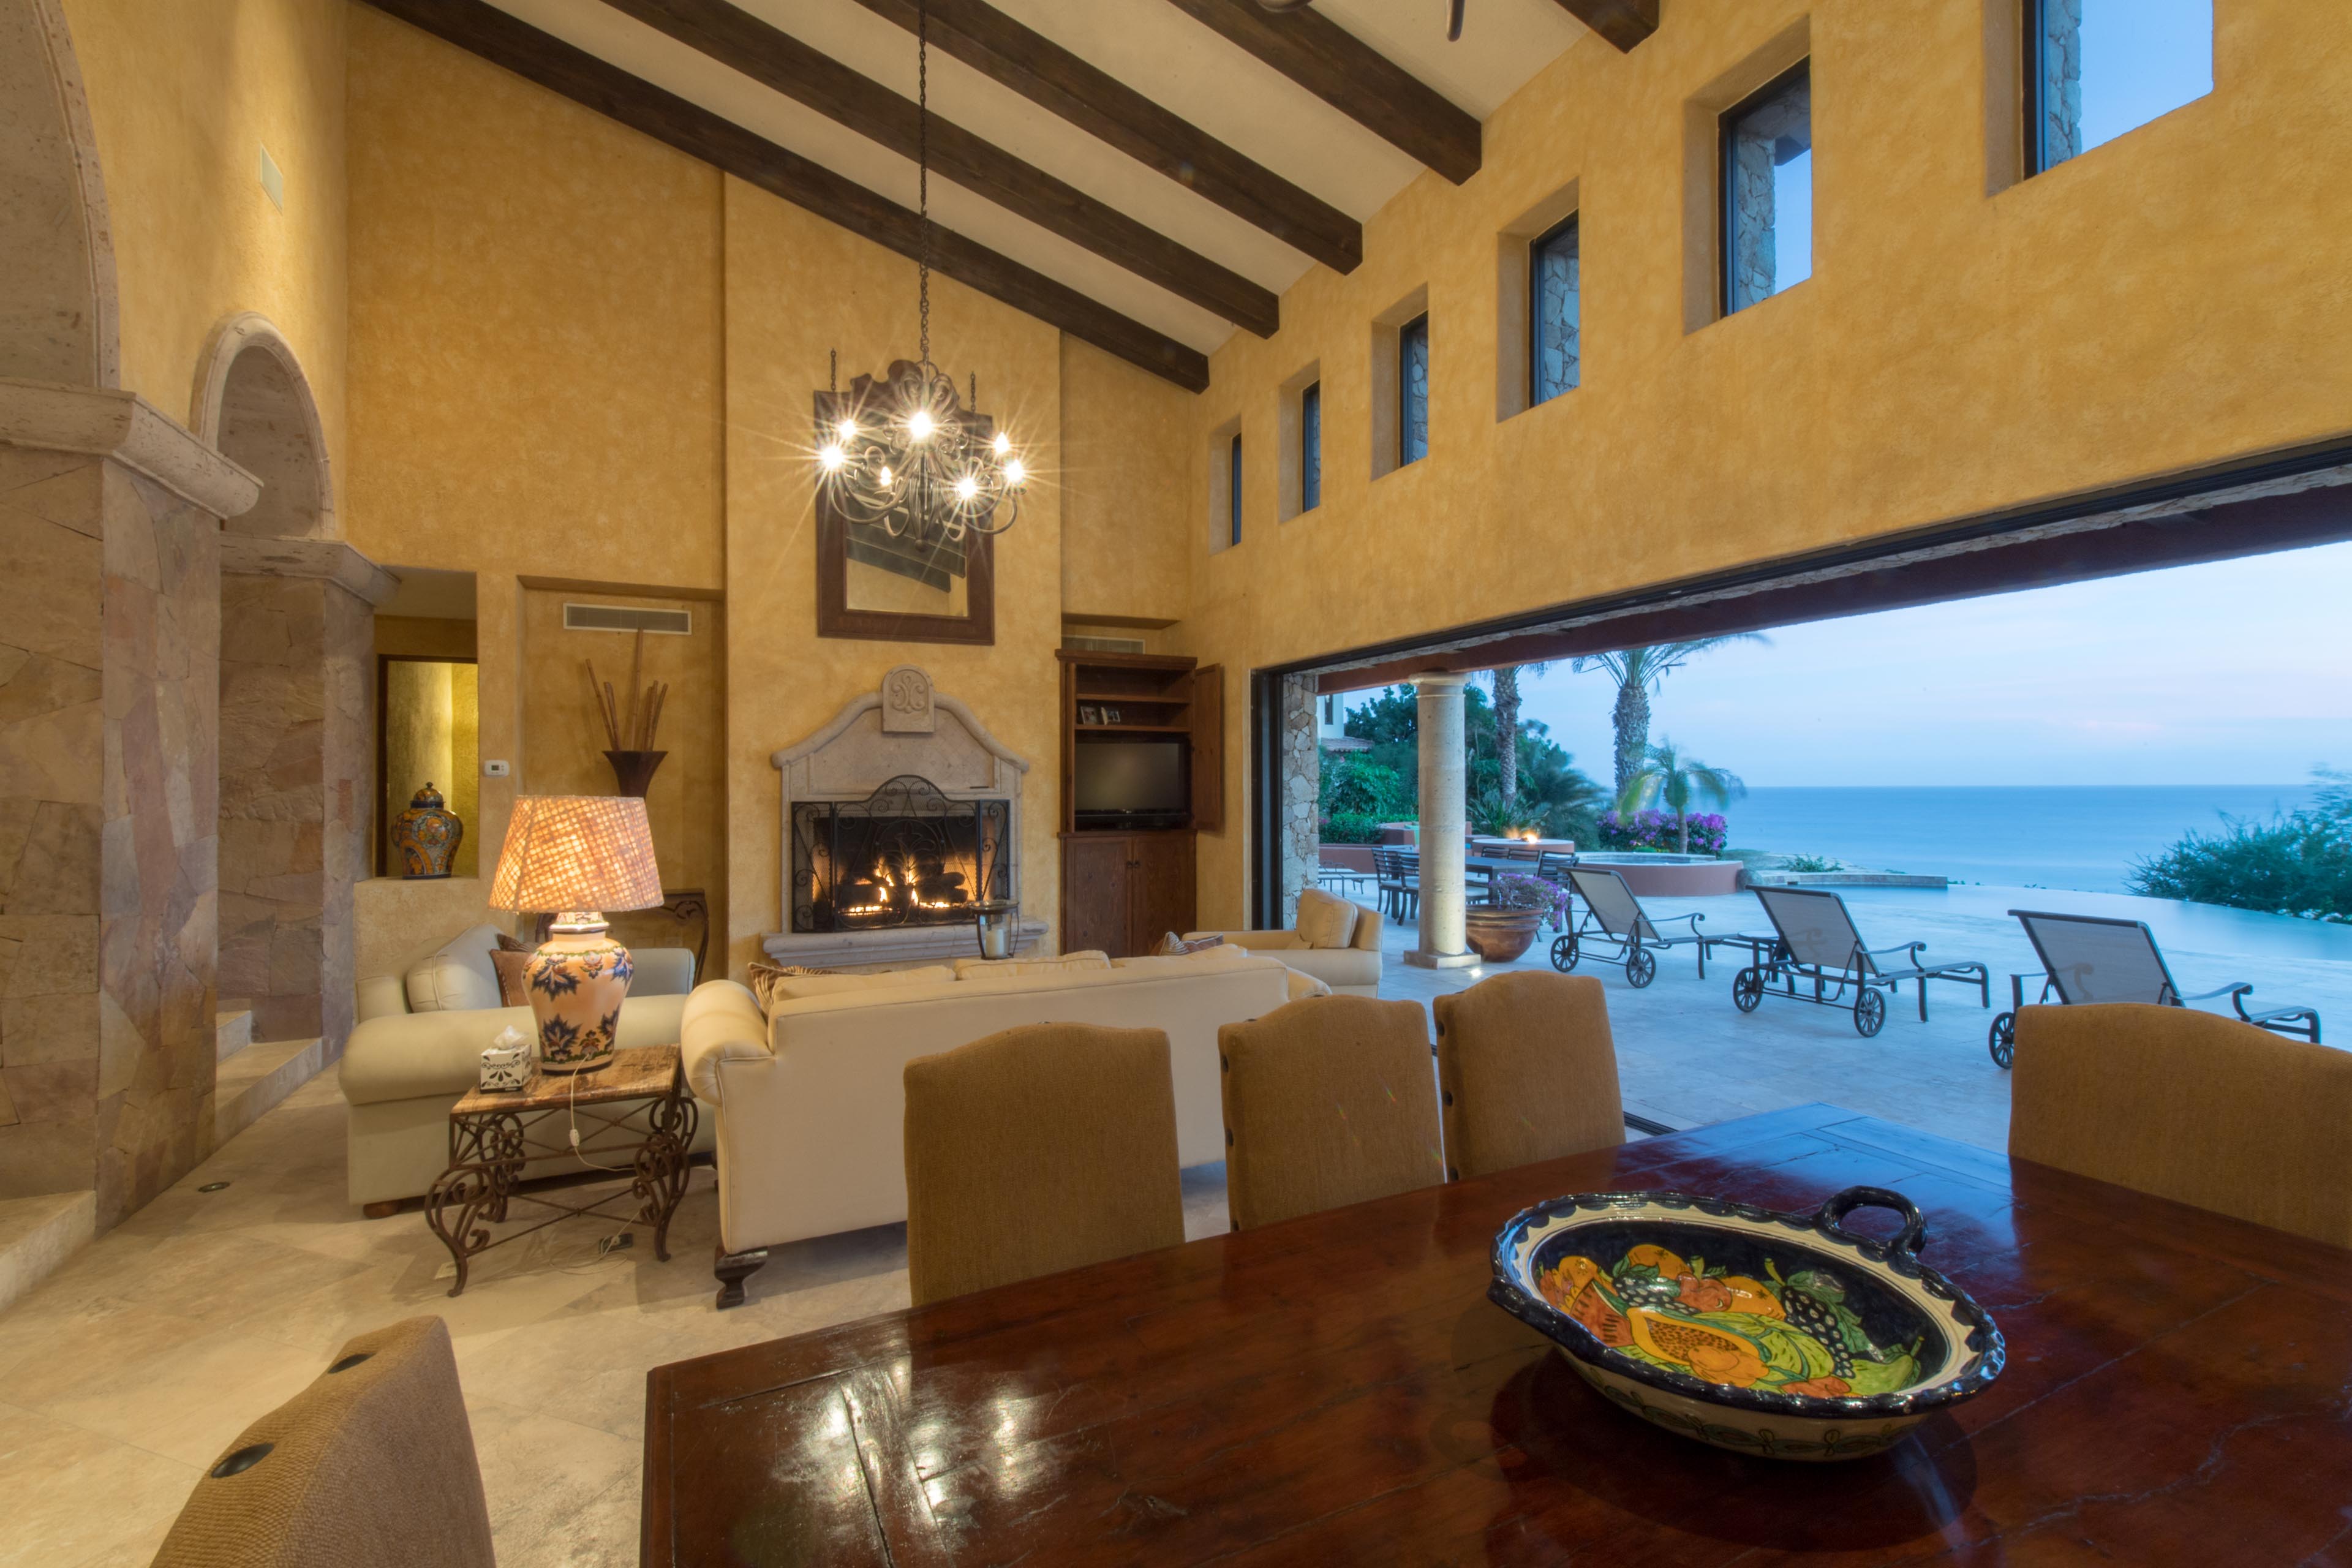 Luxury vacation rental in Los Cabos Mexico at Villa Cortez overlooking the Cabo del Sol Golf Course and Sea of Cortez